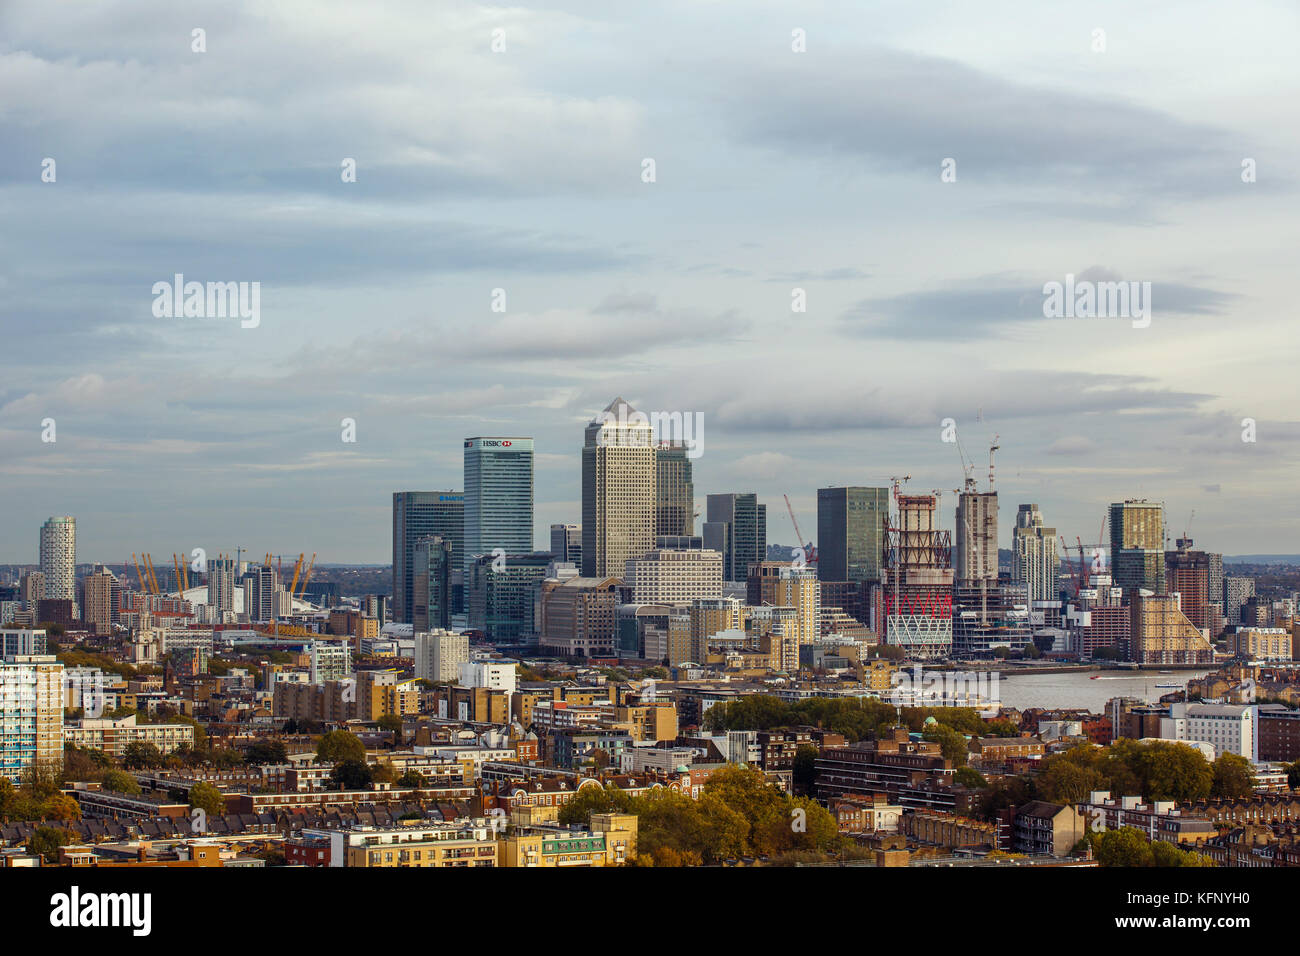 Città del distretto finanziario di Londra, canary wharf / Canada square visto dall'eliporto sul Royal Hospital di Londra Foto Stock